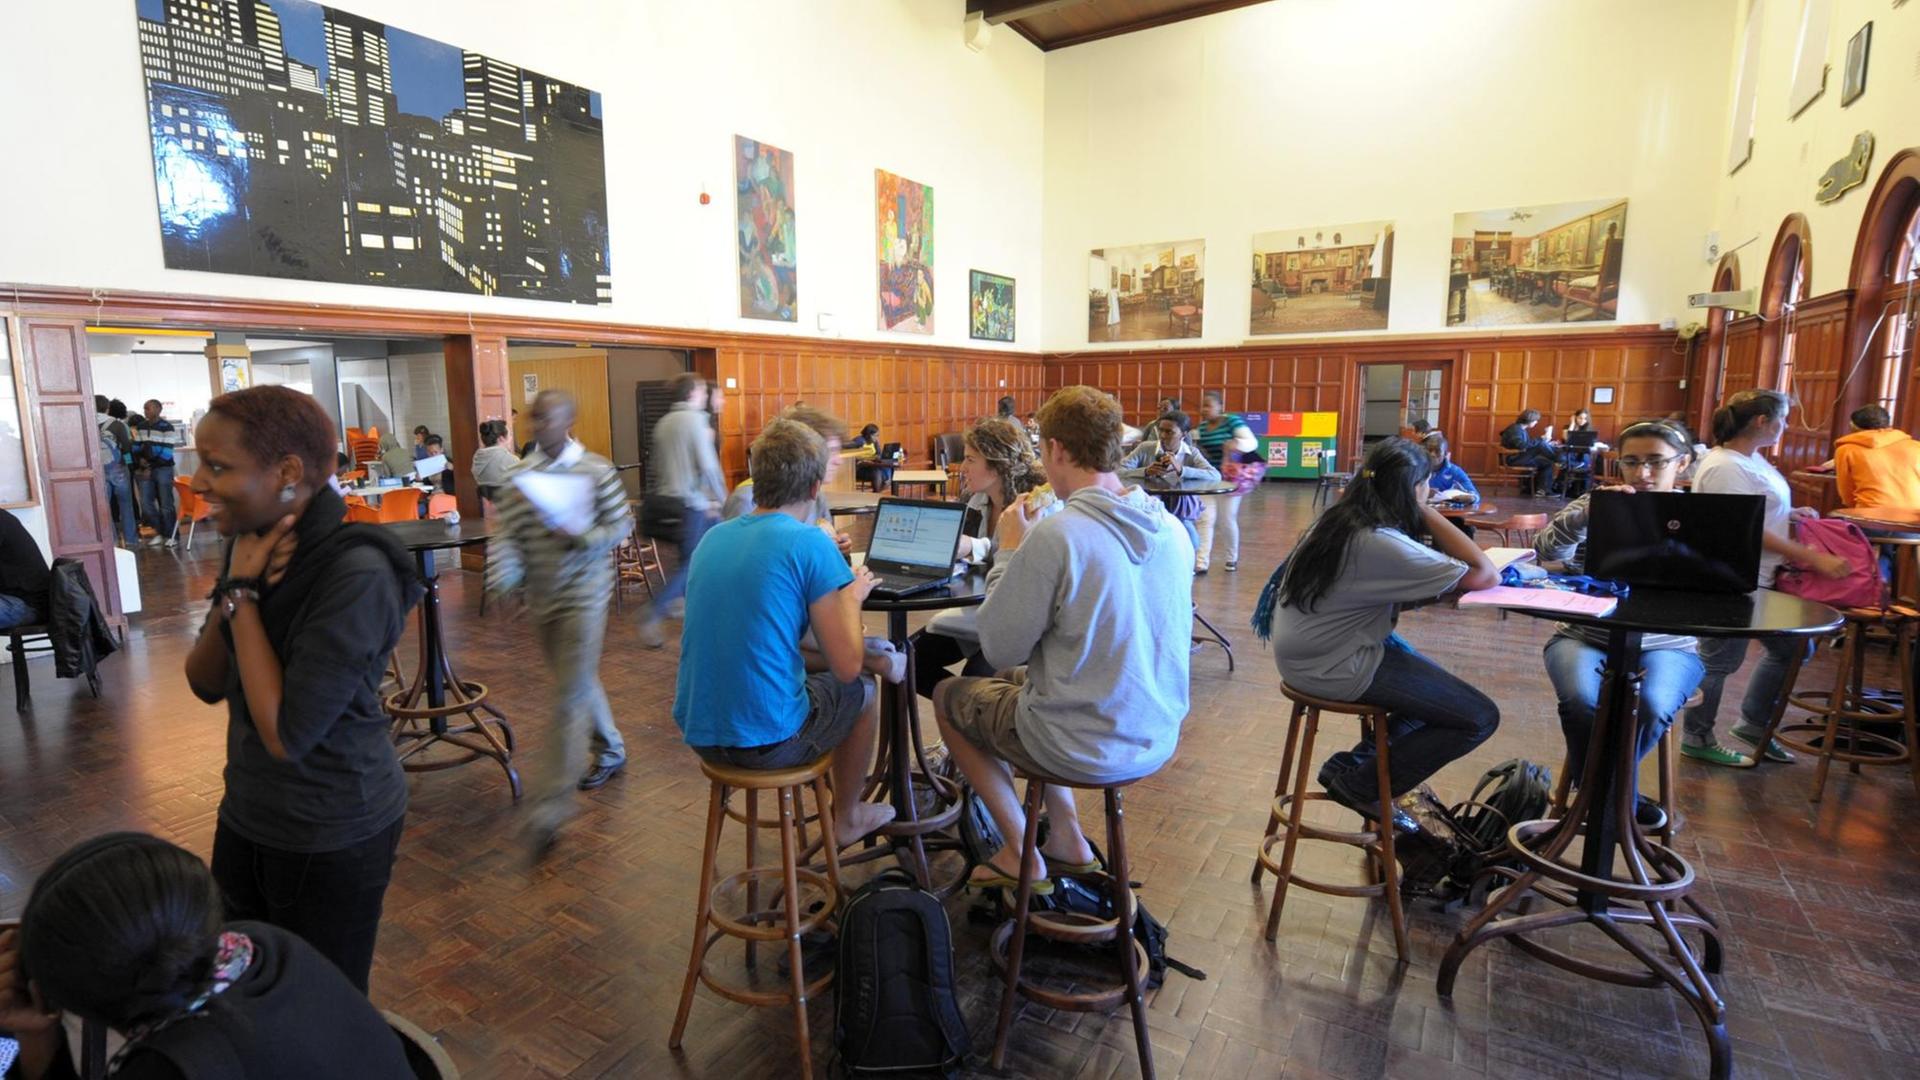 Man sieht Studenten in Südafrika - hier: in einem Saal an der Universität Kapstadt.